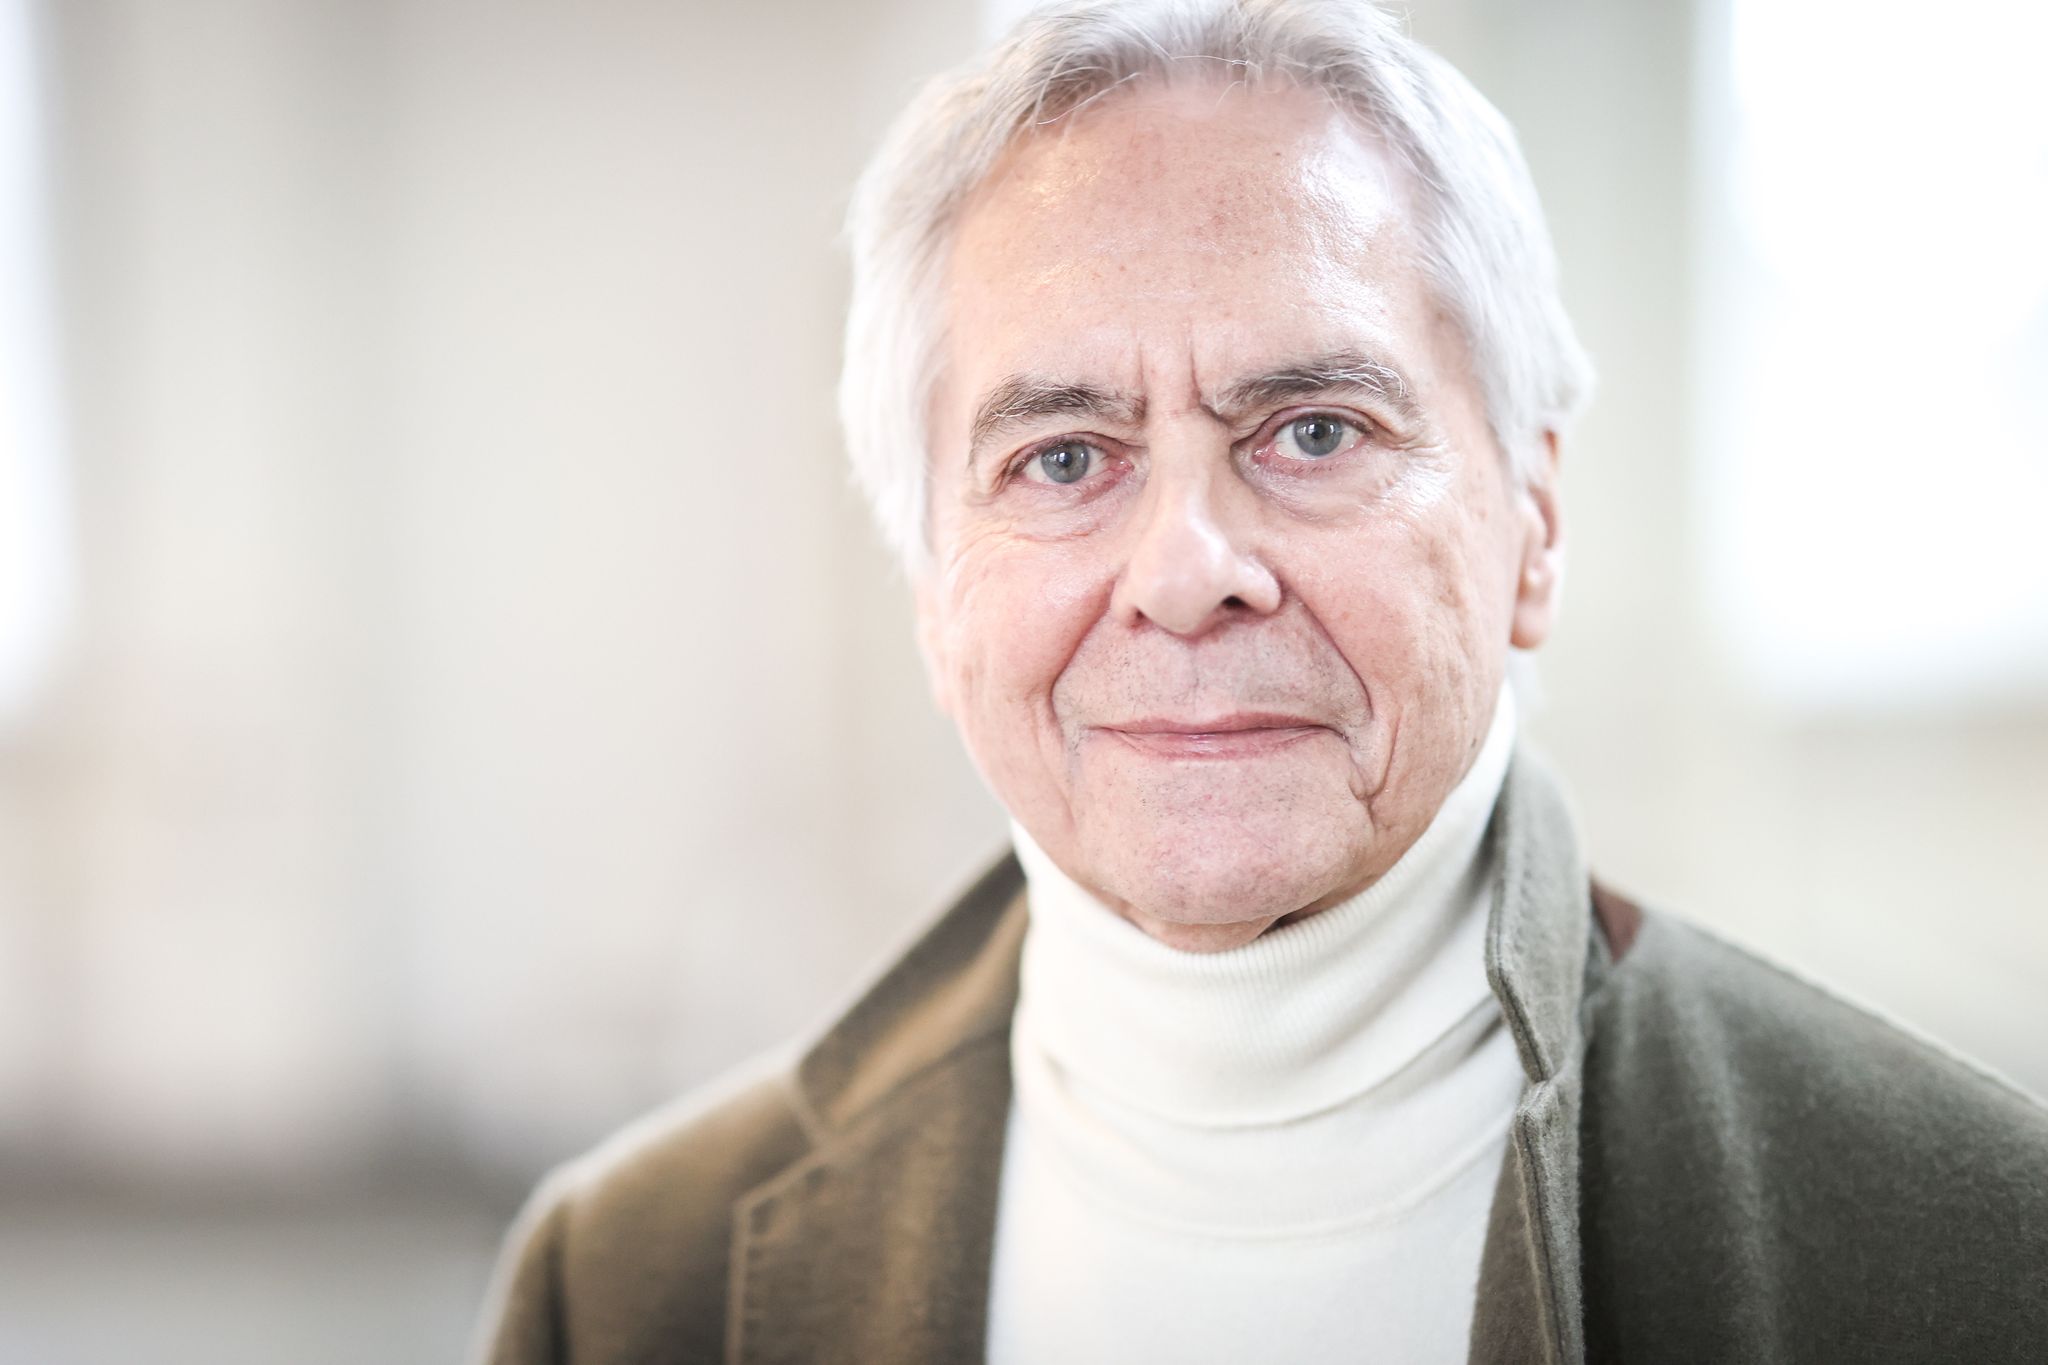 John Neumeier, Ballettdirektor und Chefchoreograf der Compagnie beim Hamburg Ballett, verabschiedet sich.